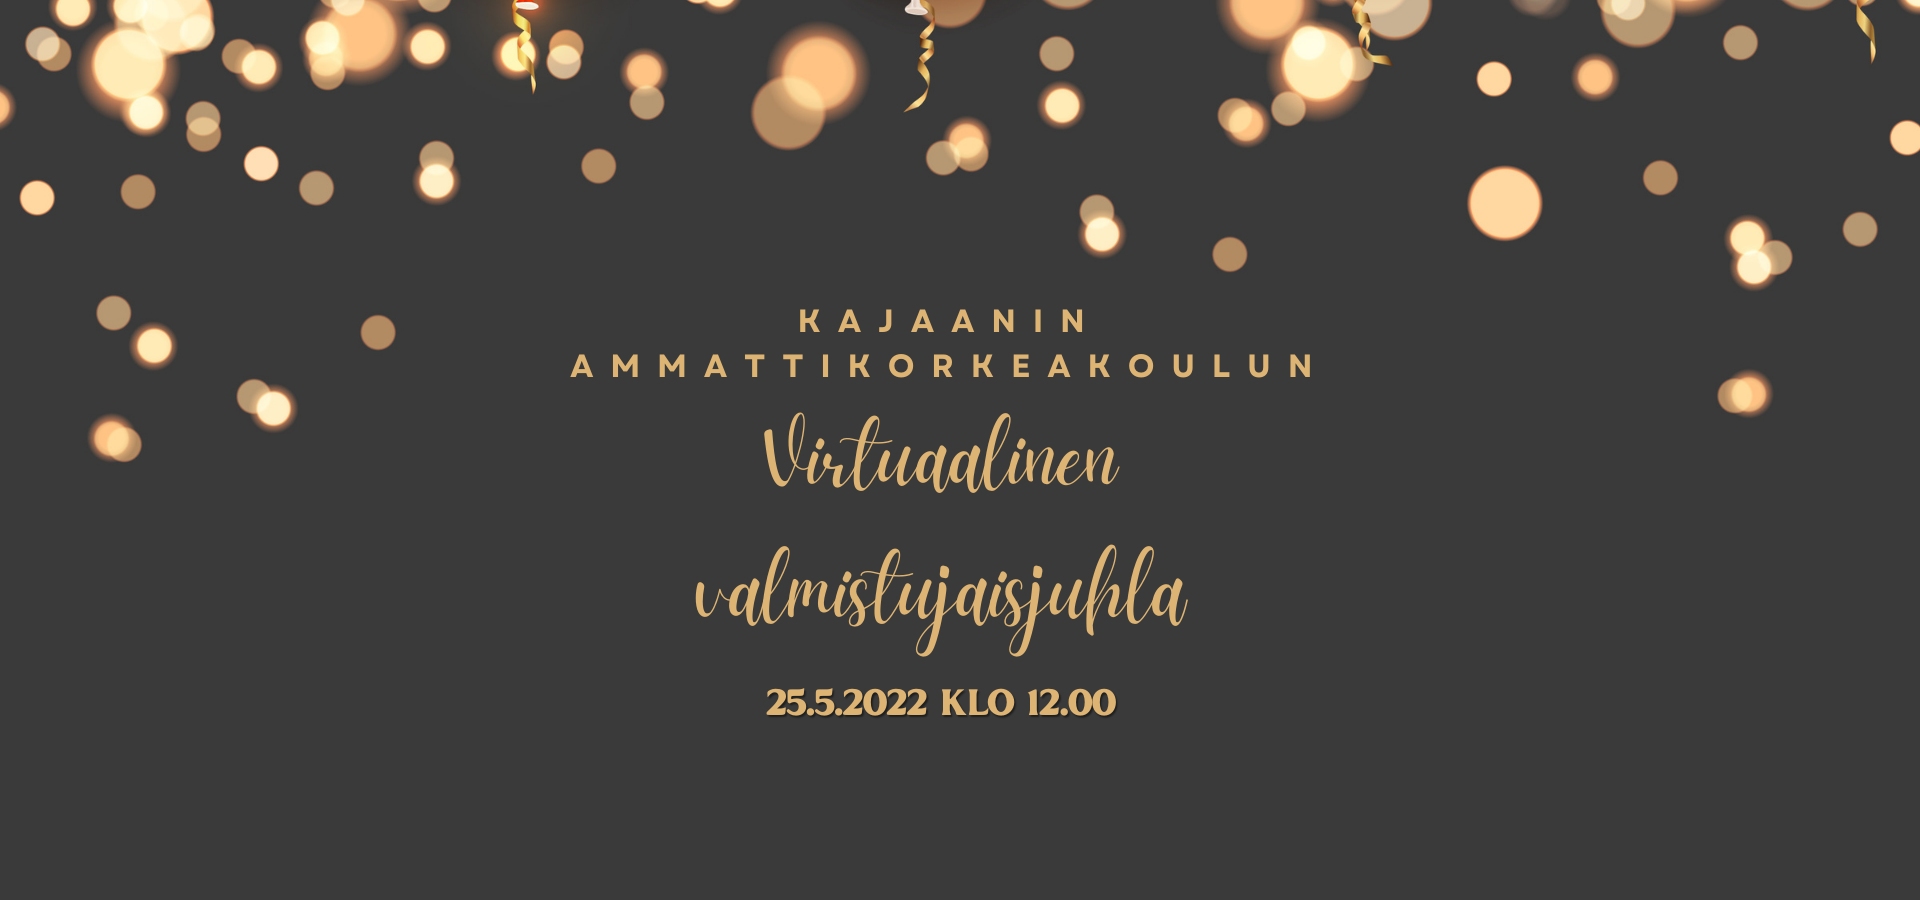 Tumma kuva, jossa ilmapalloja. Teksti: Kajaanin ammattikorkeakoulun virtuaalinen valmistujaisjuhla 25.5.2022 klo 12.00